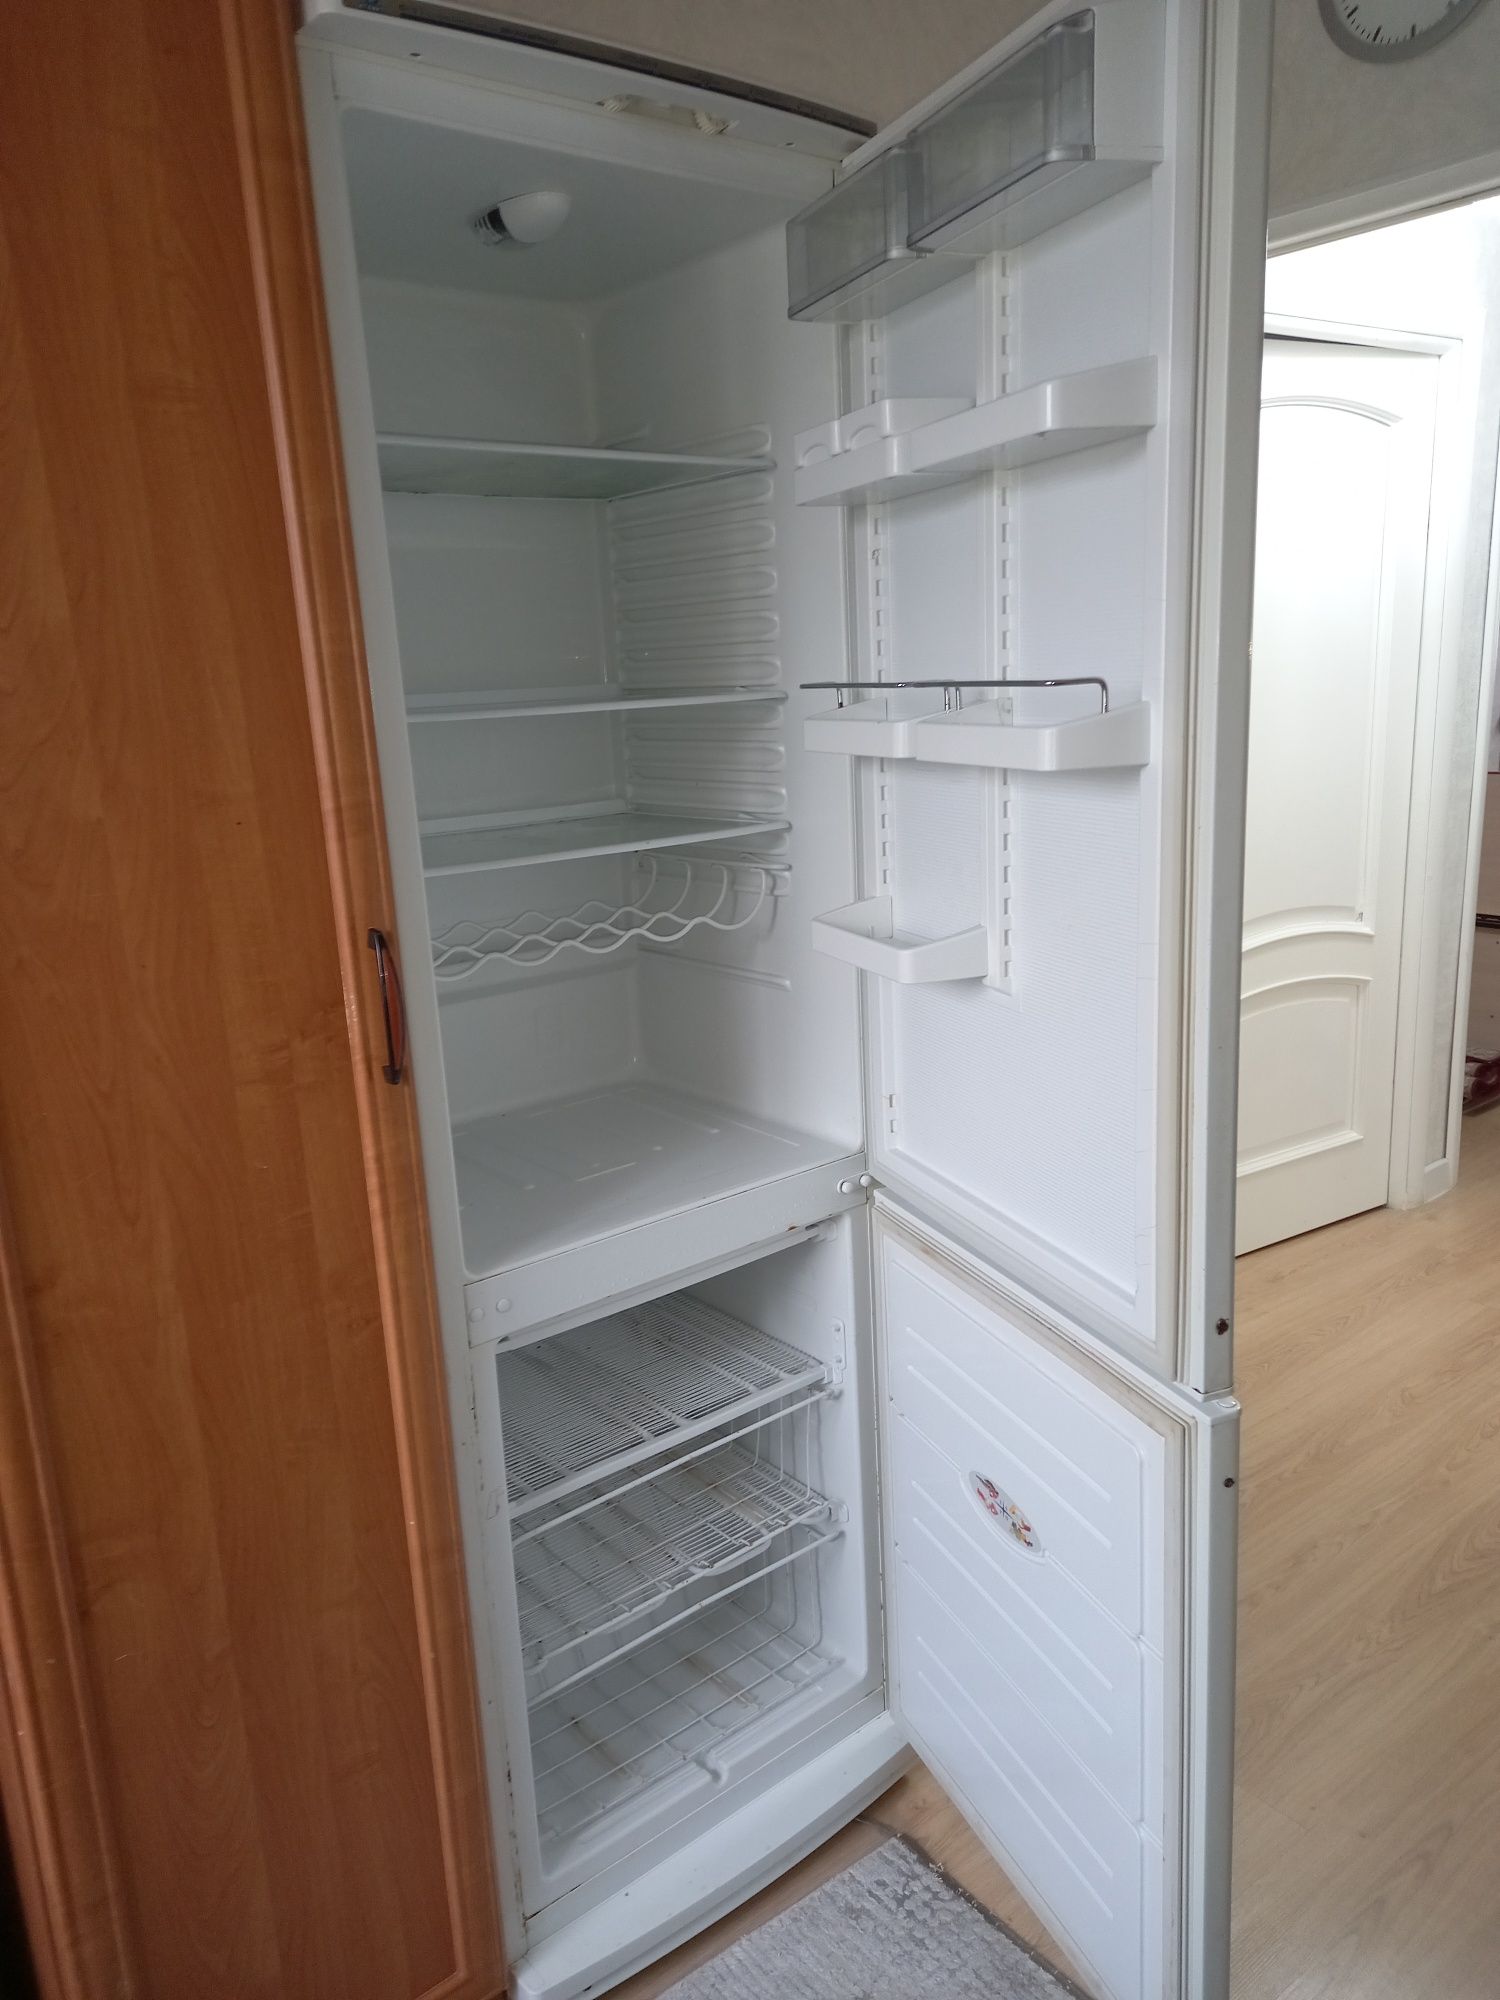 Продаётся легендарный двухкамерный холодильник Атлант б/у